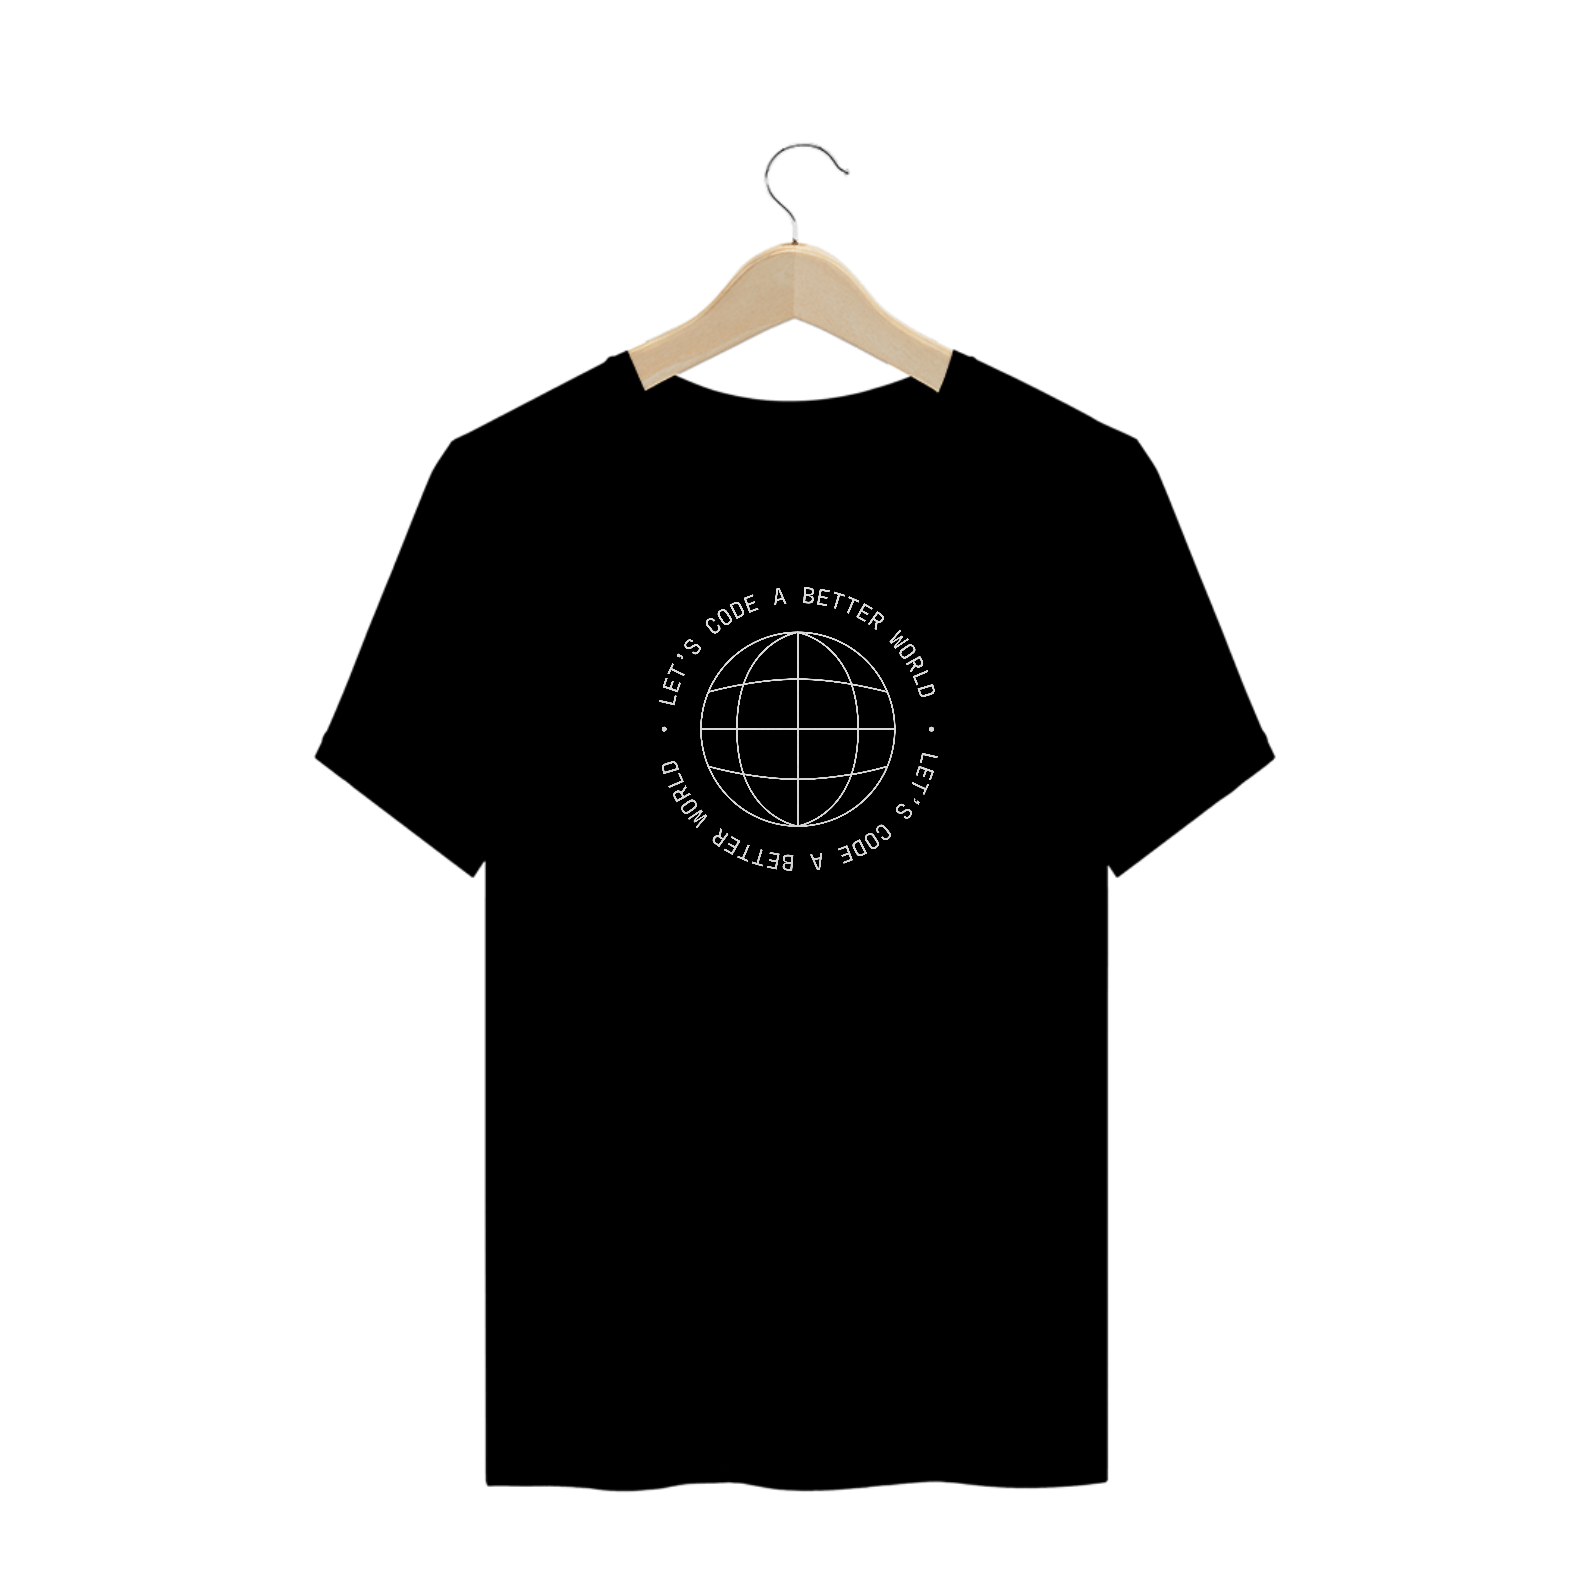 Camiseta Let's make a better world